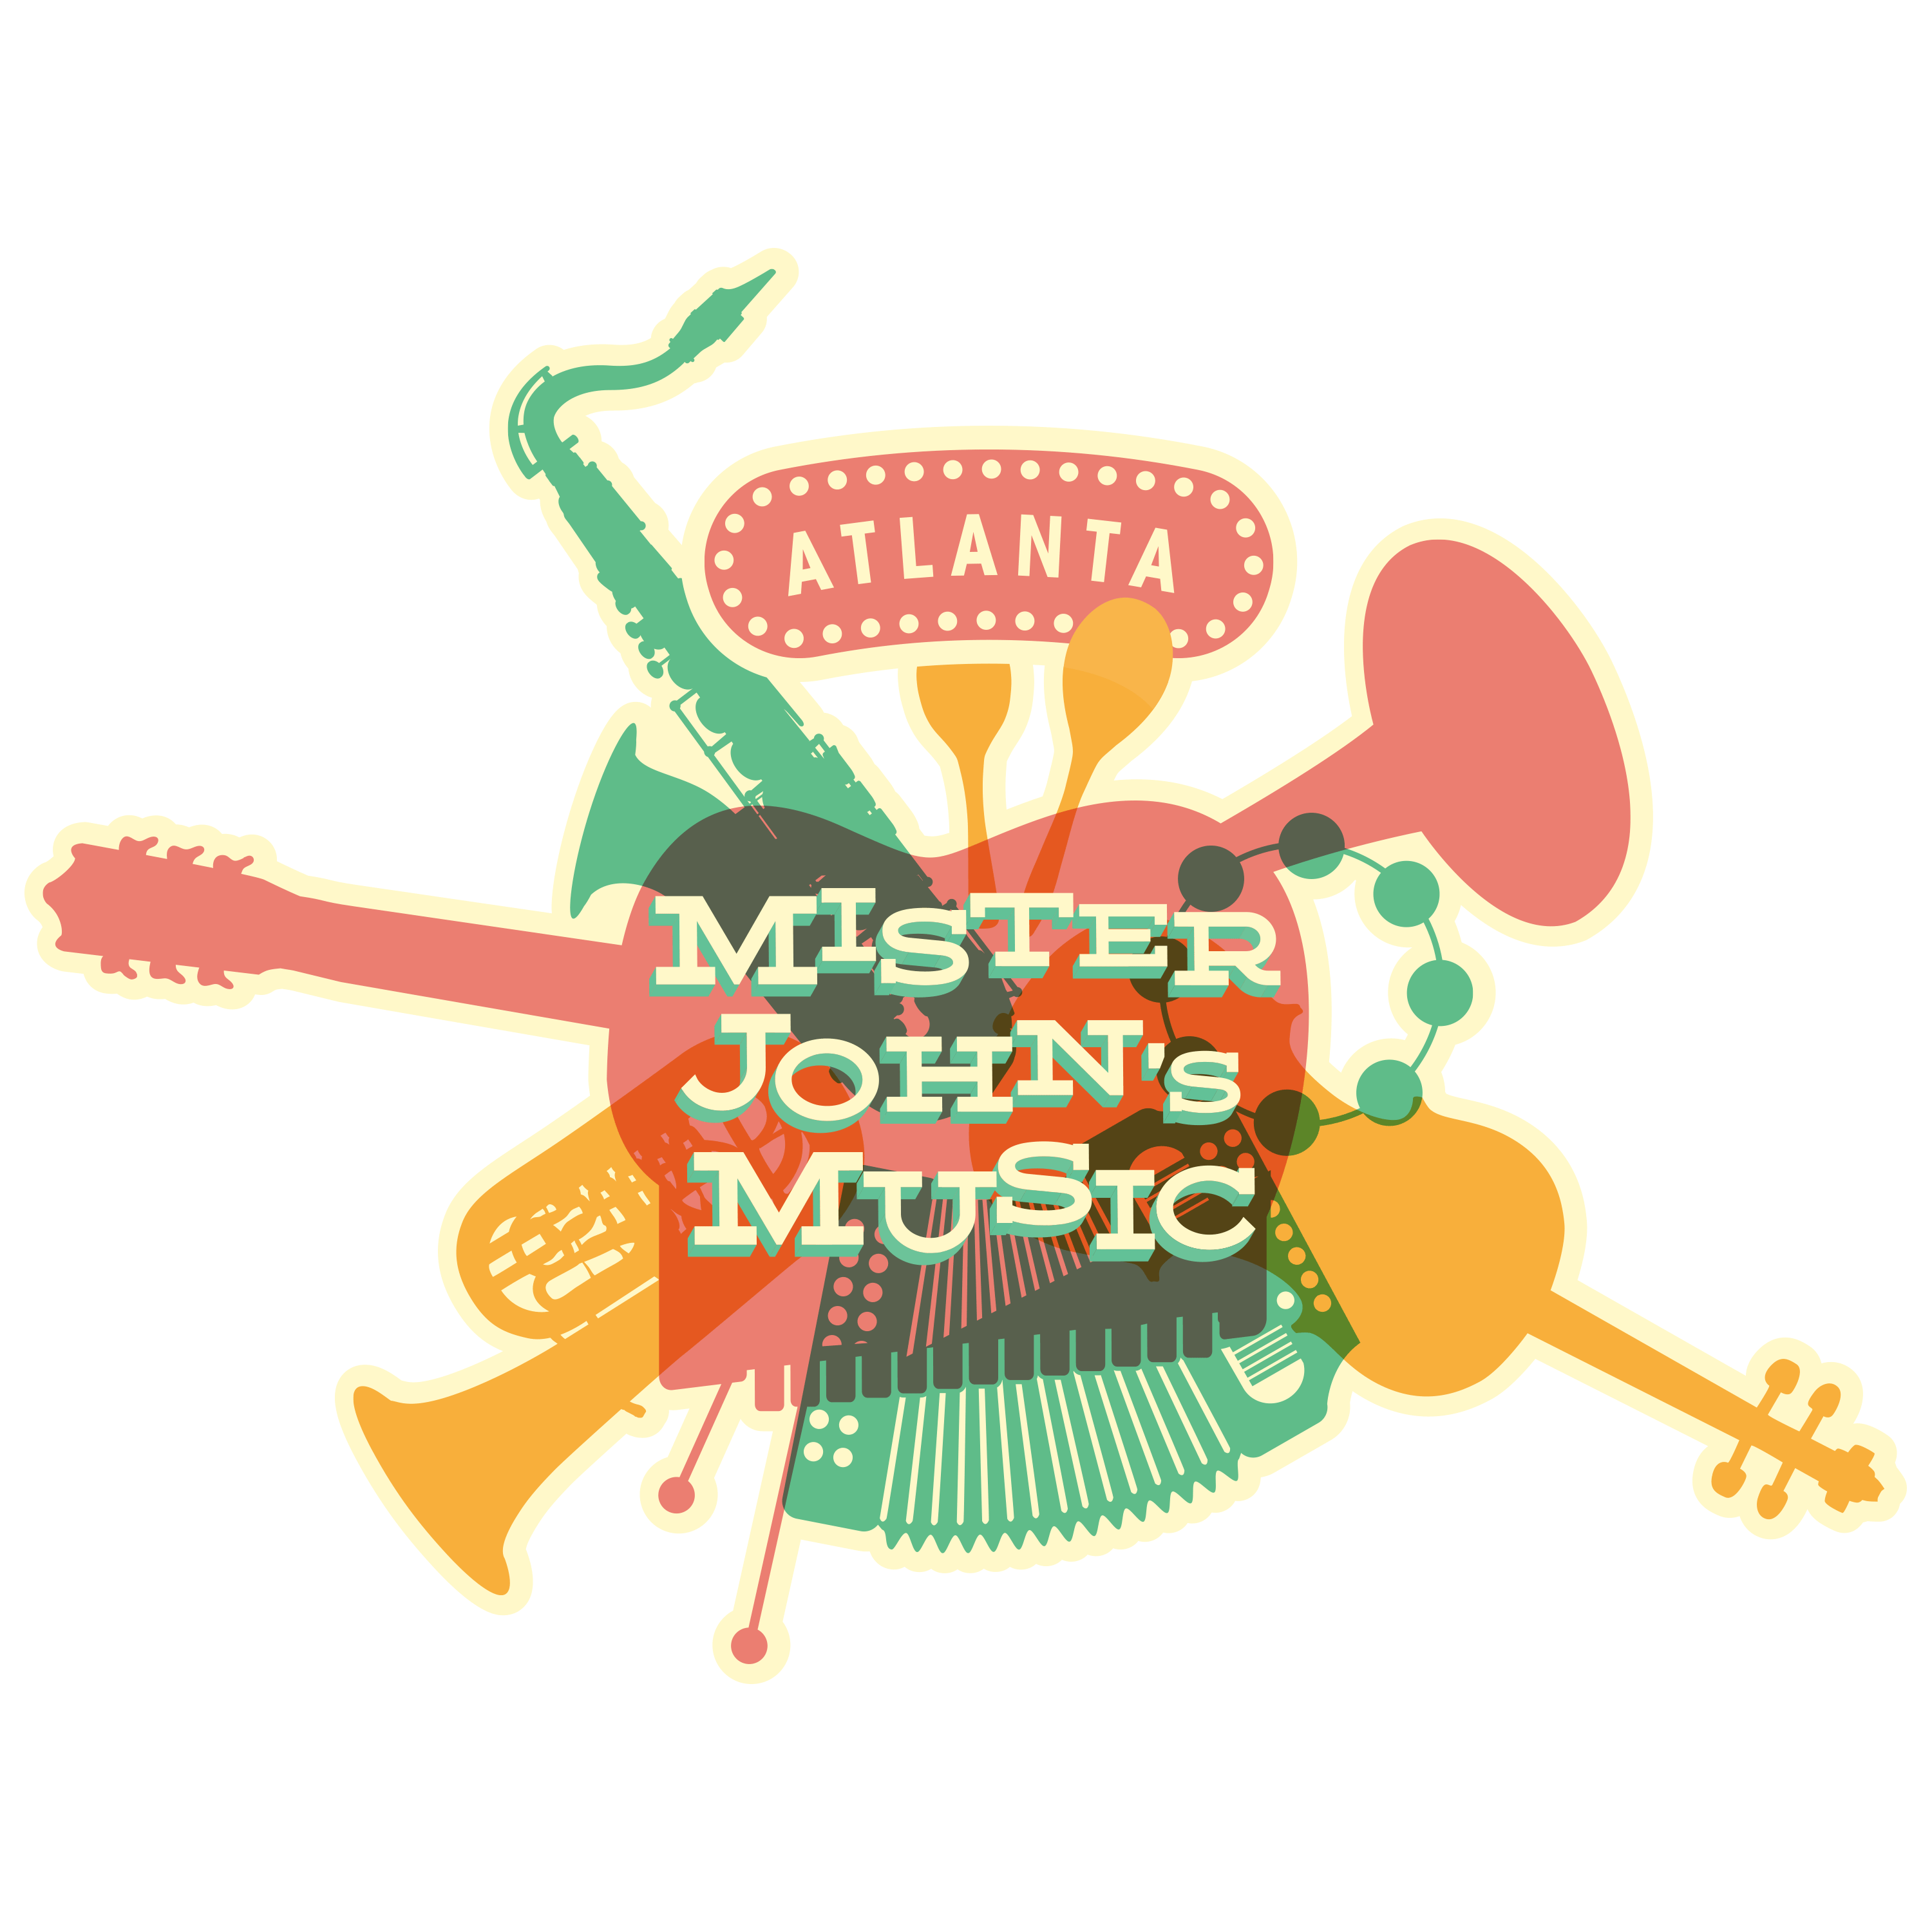 Mister John's Music logo